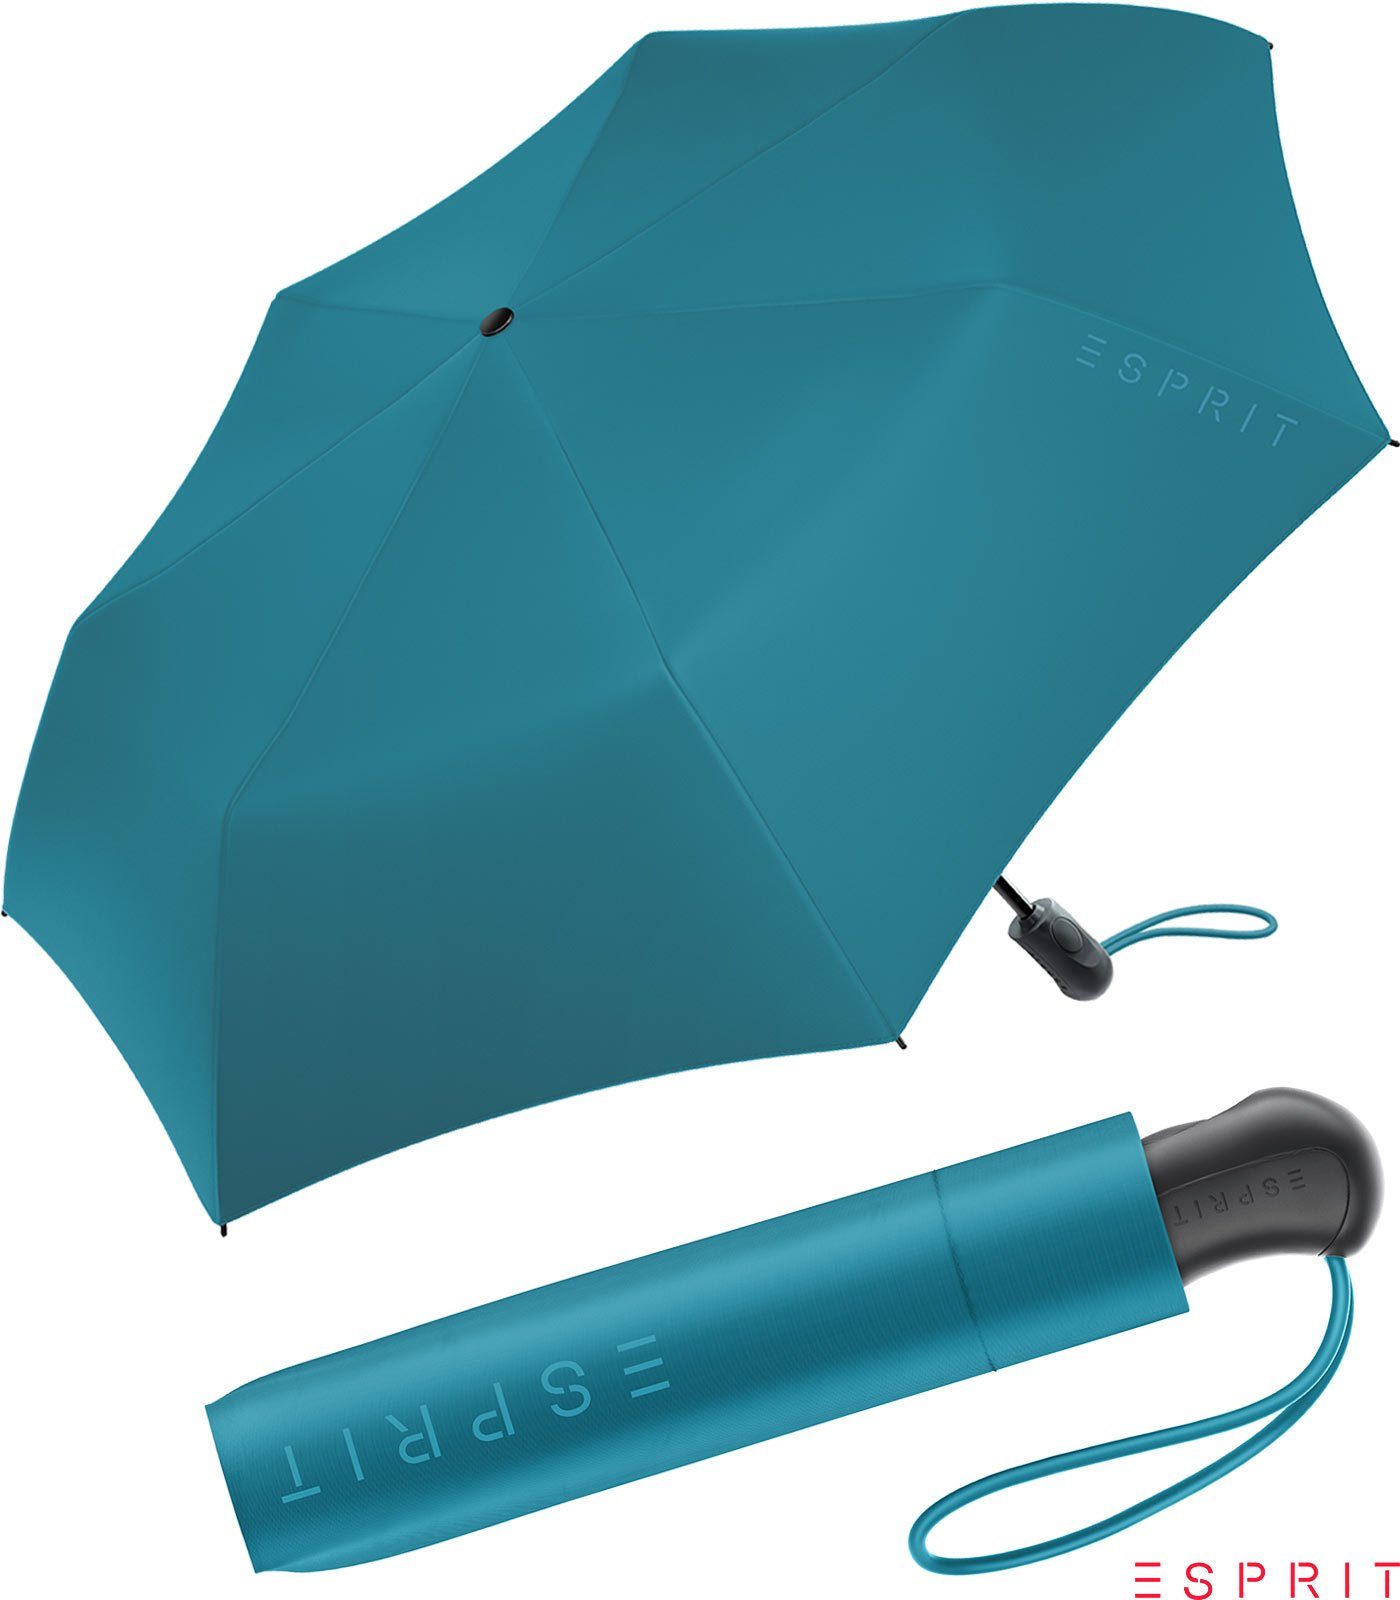 neuen stabil, den - Trendfarben Light 2022 blau Easymatic Taschenregenschirm depths, in HW Damen Automatik Esprit Auf-Zu ocean praktisch,